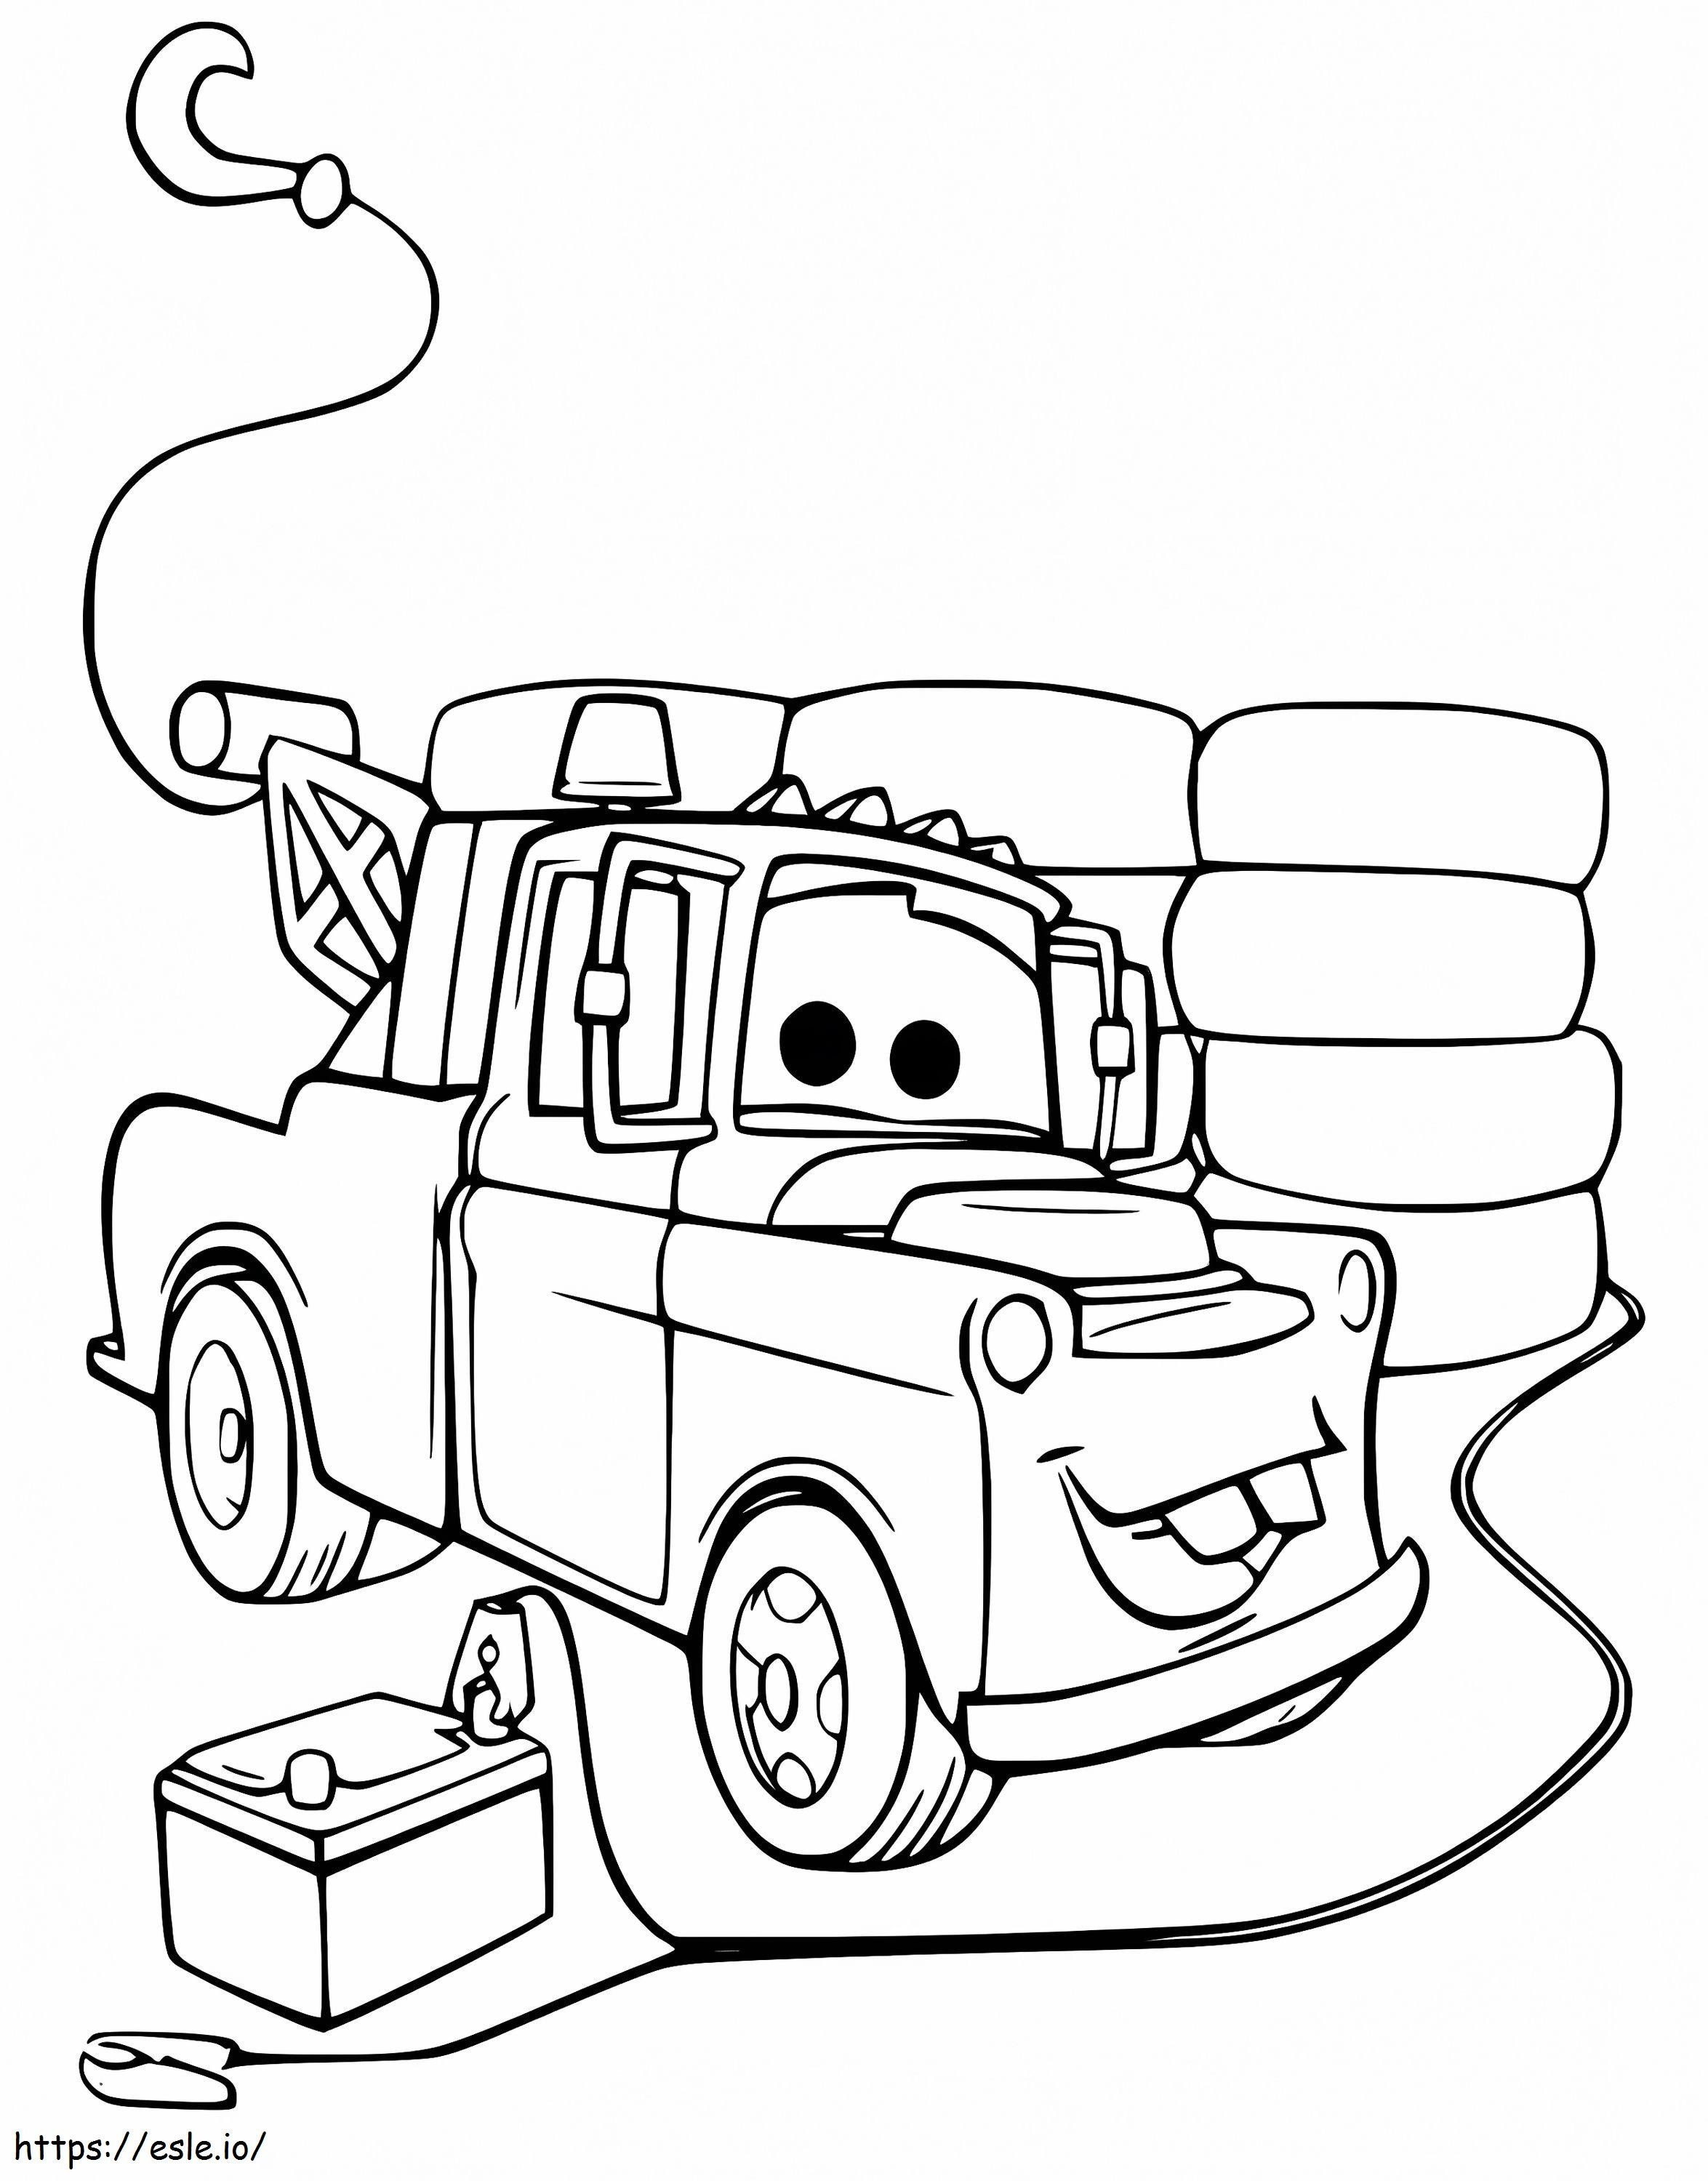 Sir Tow Mater dos carros para colorir